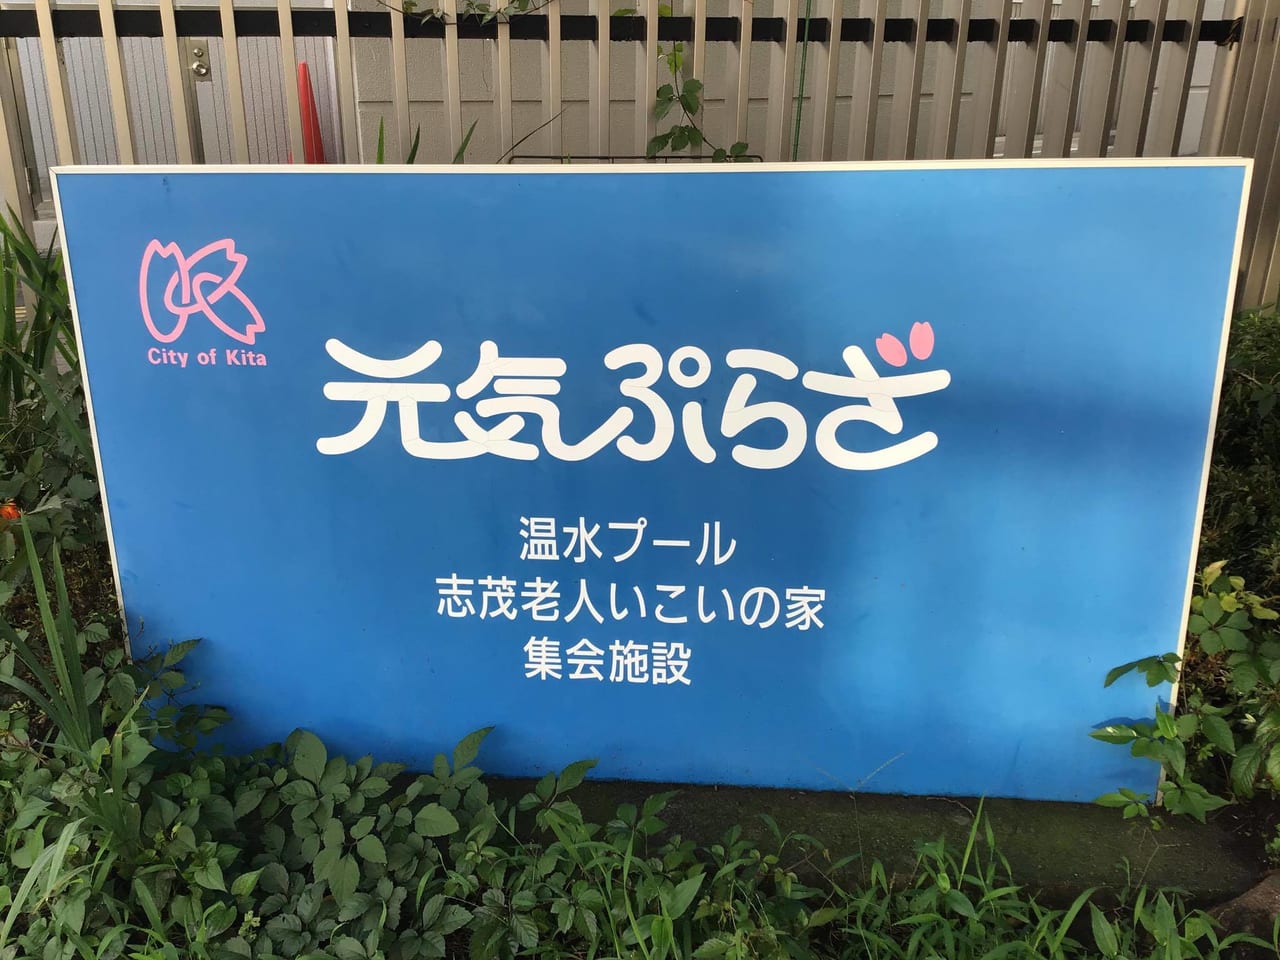 東京都北区 元気ぷらざ 温水プールのウォータースライダーの利用が再開されます 号外net 東京都北区